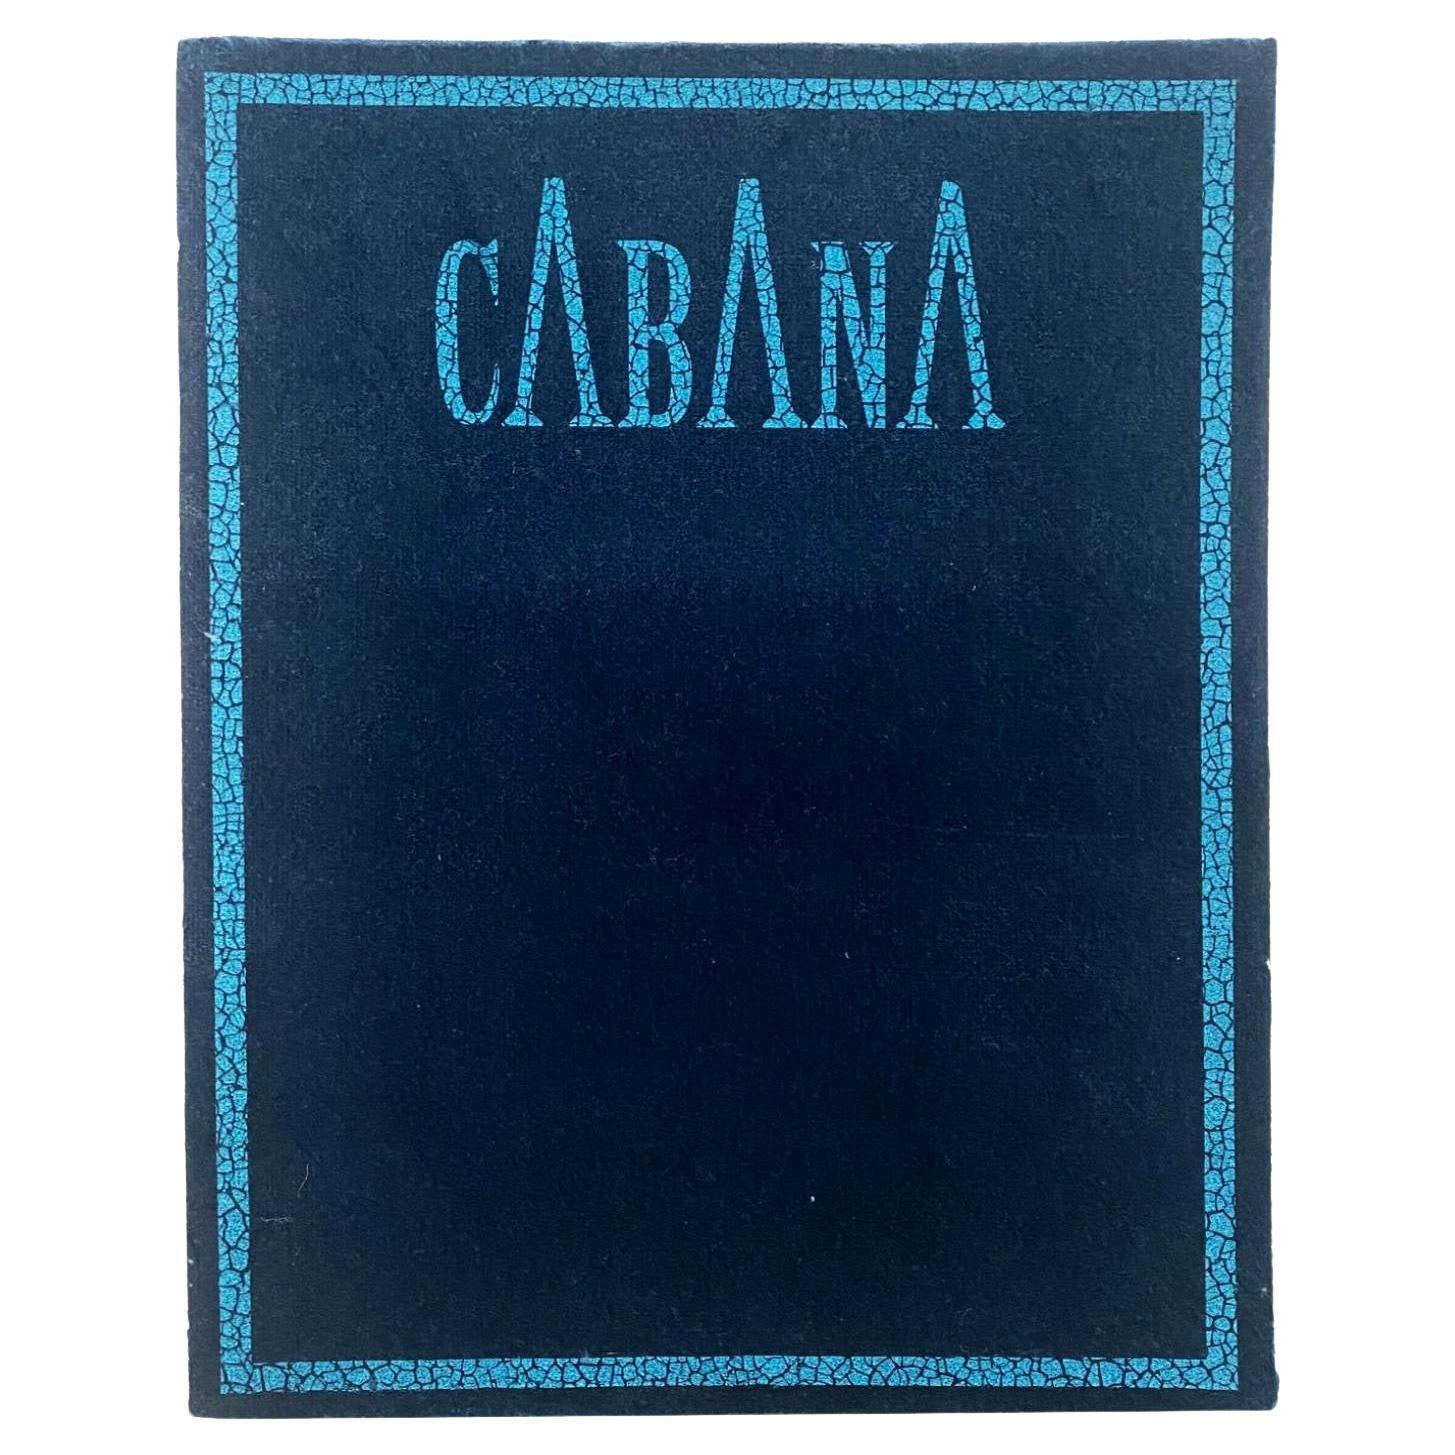 2021 Cabana Magazine Issue 15 